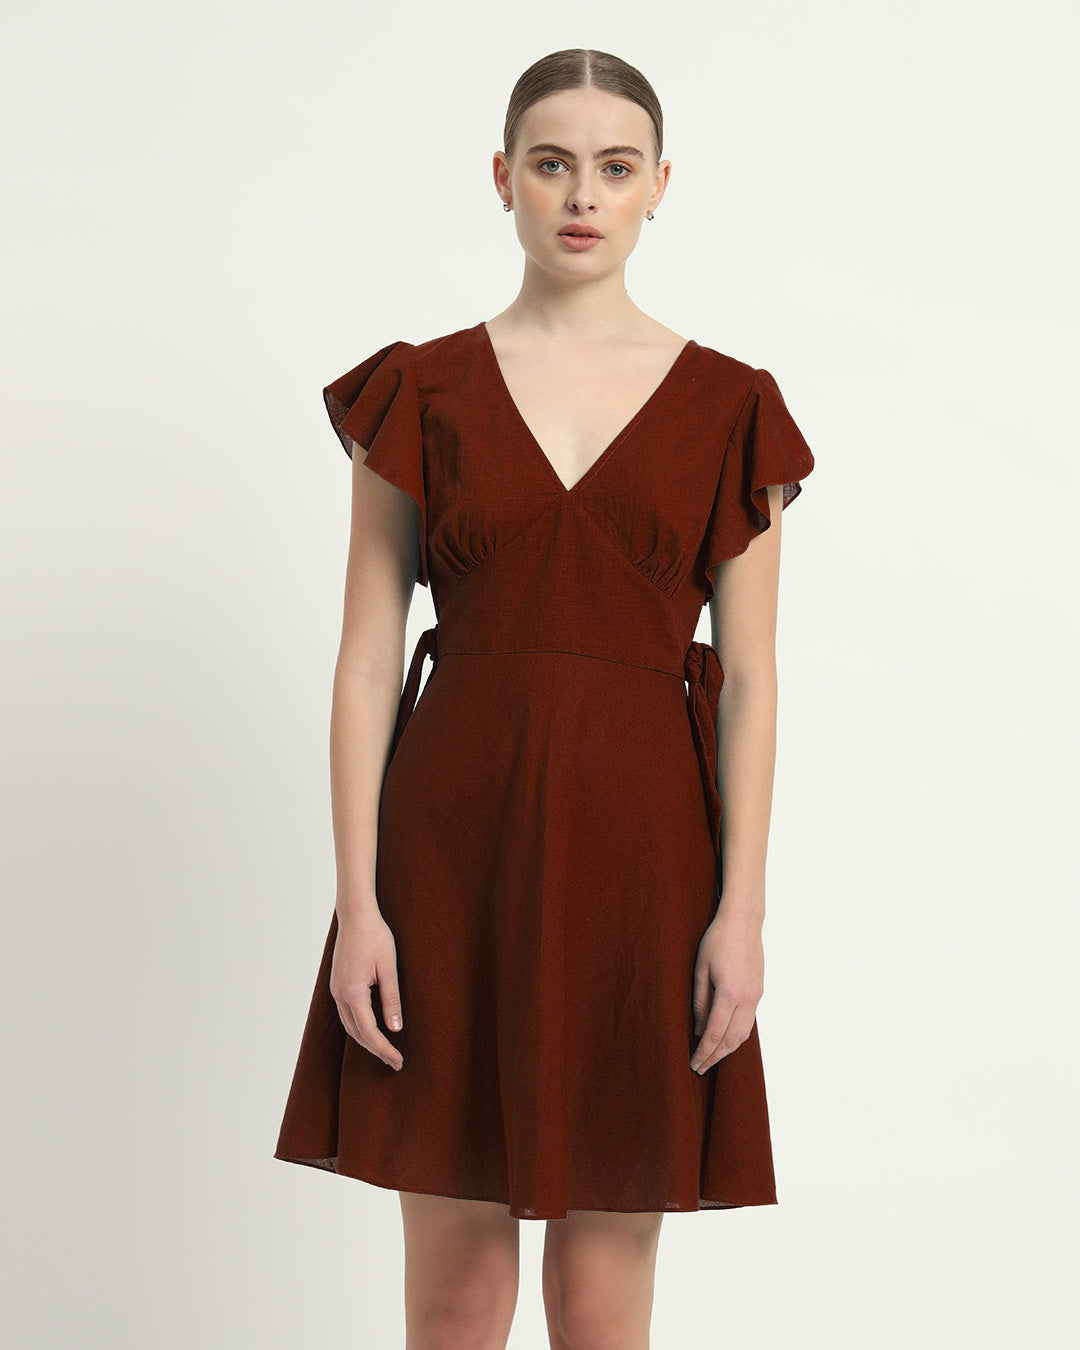 The Fairlie Rouge Cotton Dress